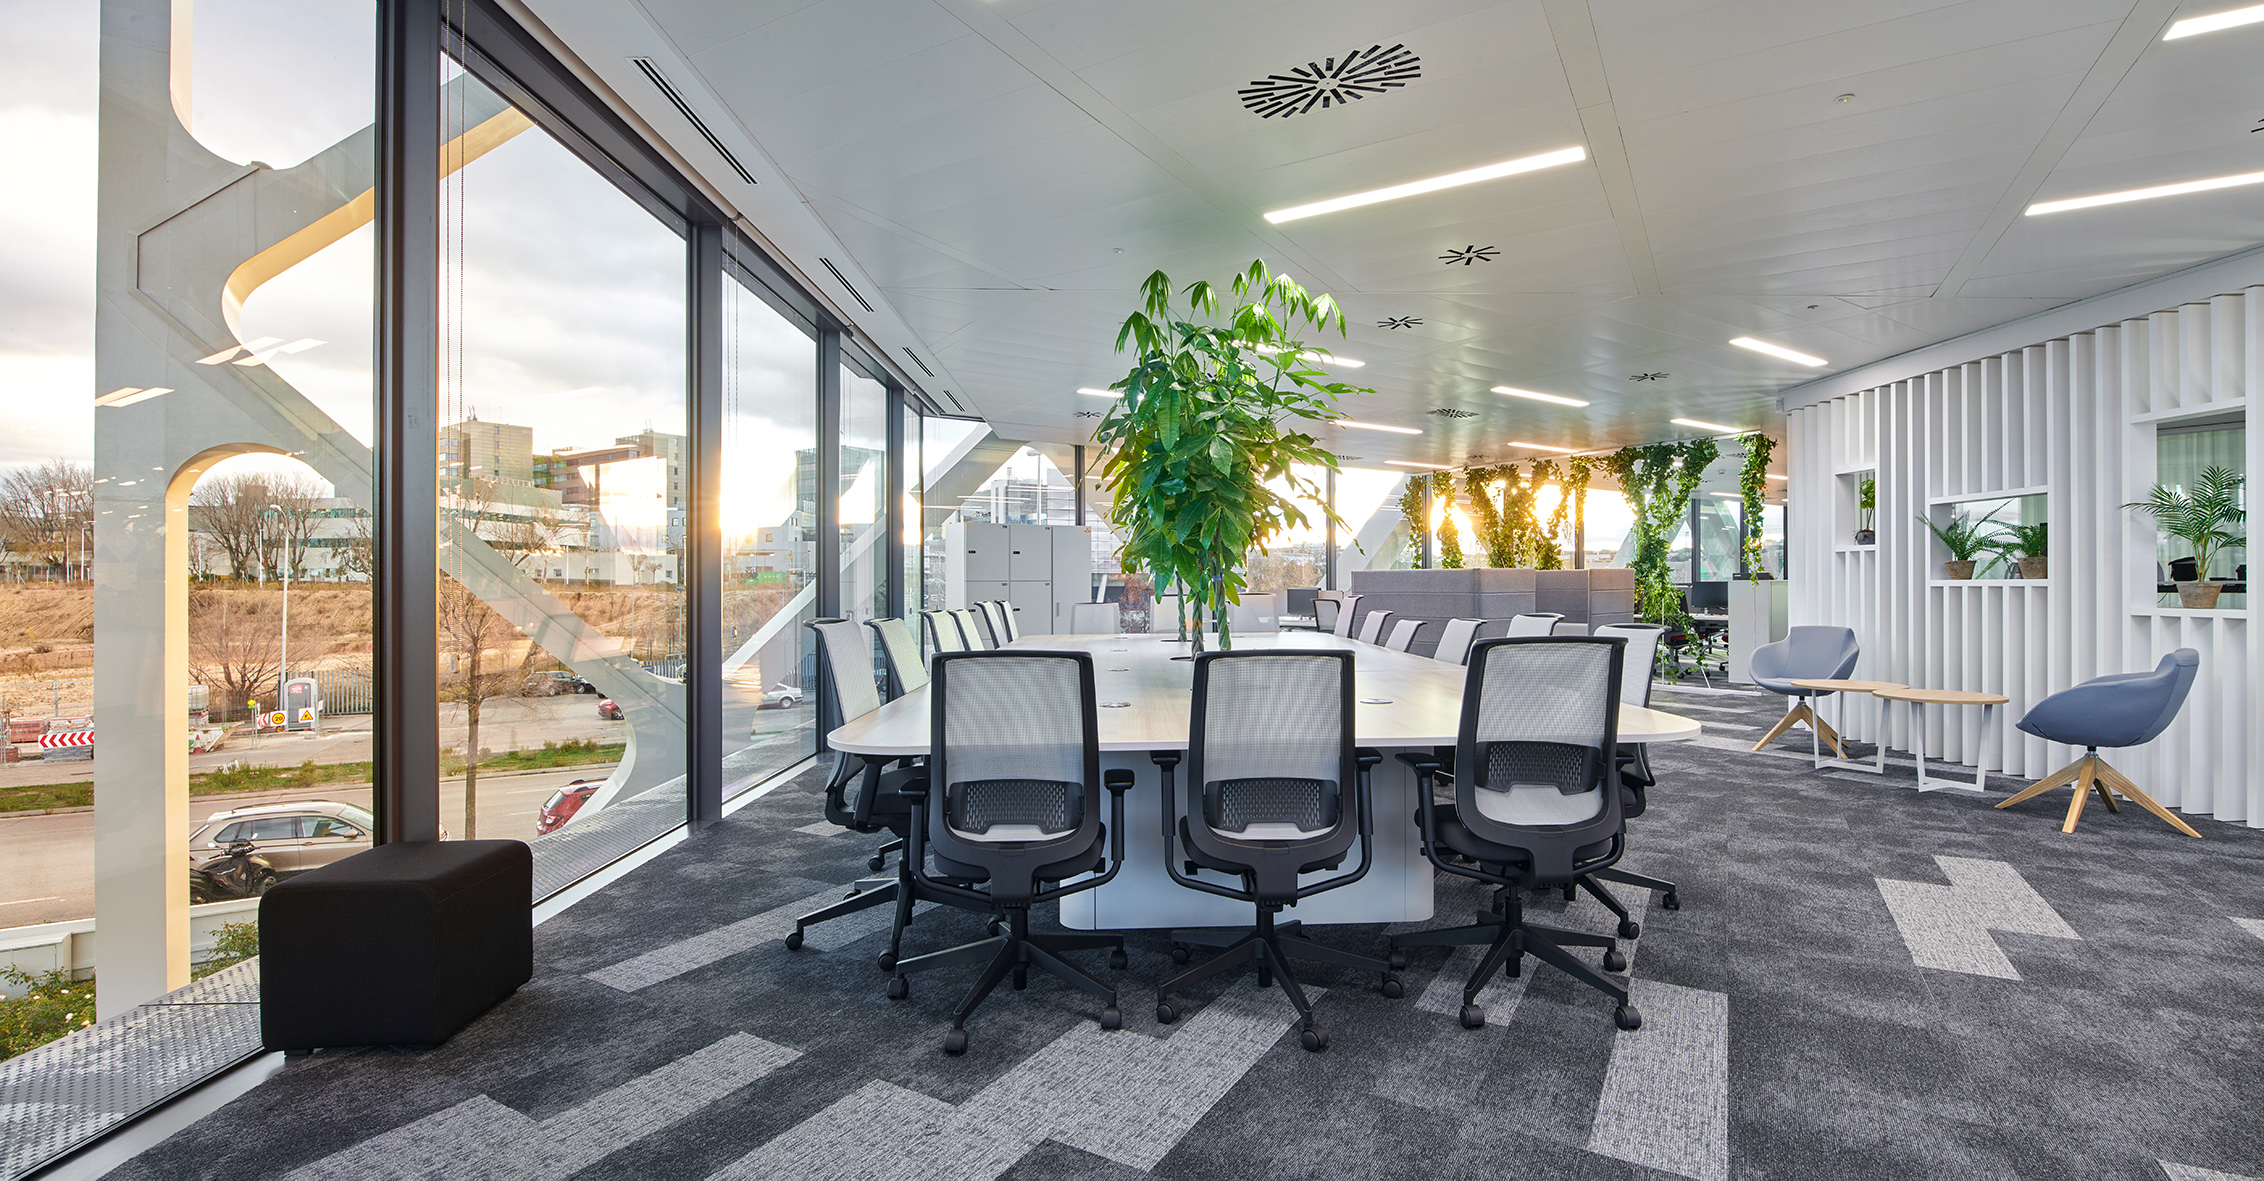 O uso de luz natural ao invés de iluminação artificial brilhante torna o escritório da Lenovo em Madrid, Espanha, mais confortável para todos